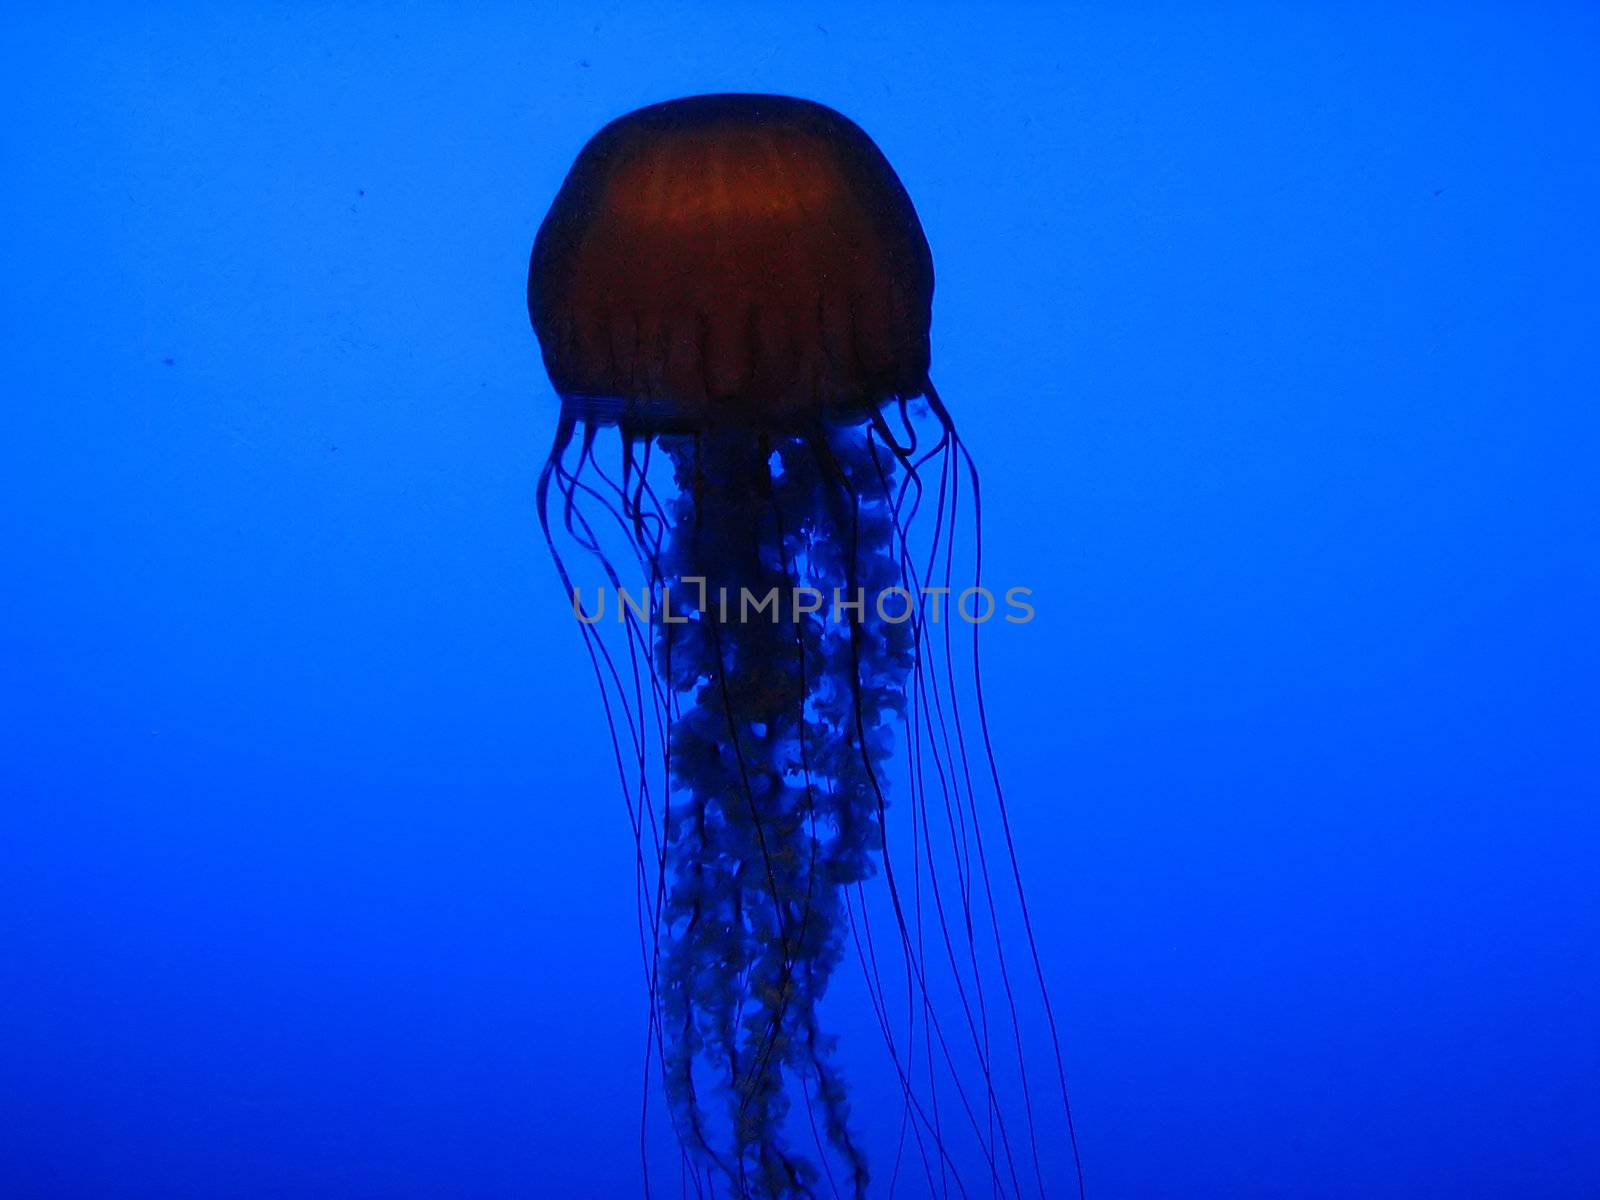 Jellyfish by llyr8